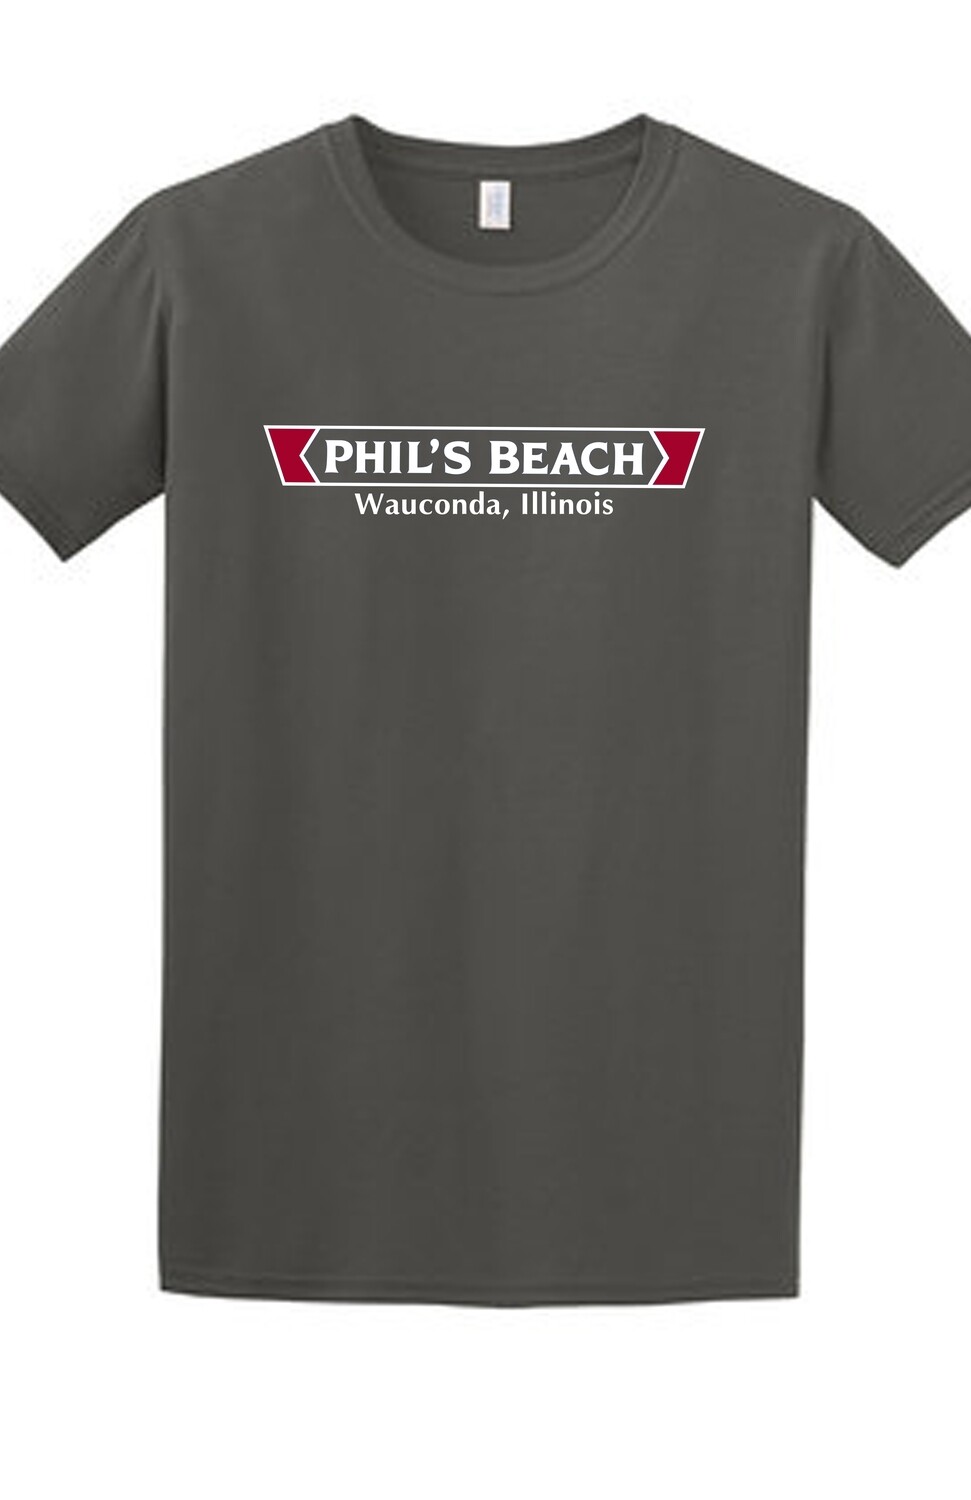 Phil's Beach T-shirt